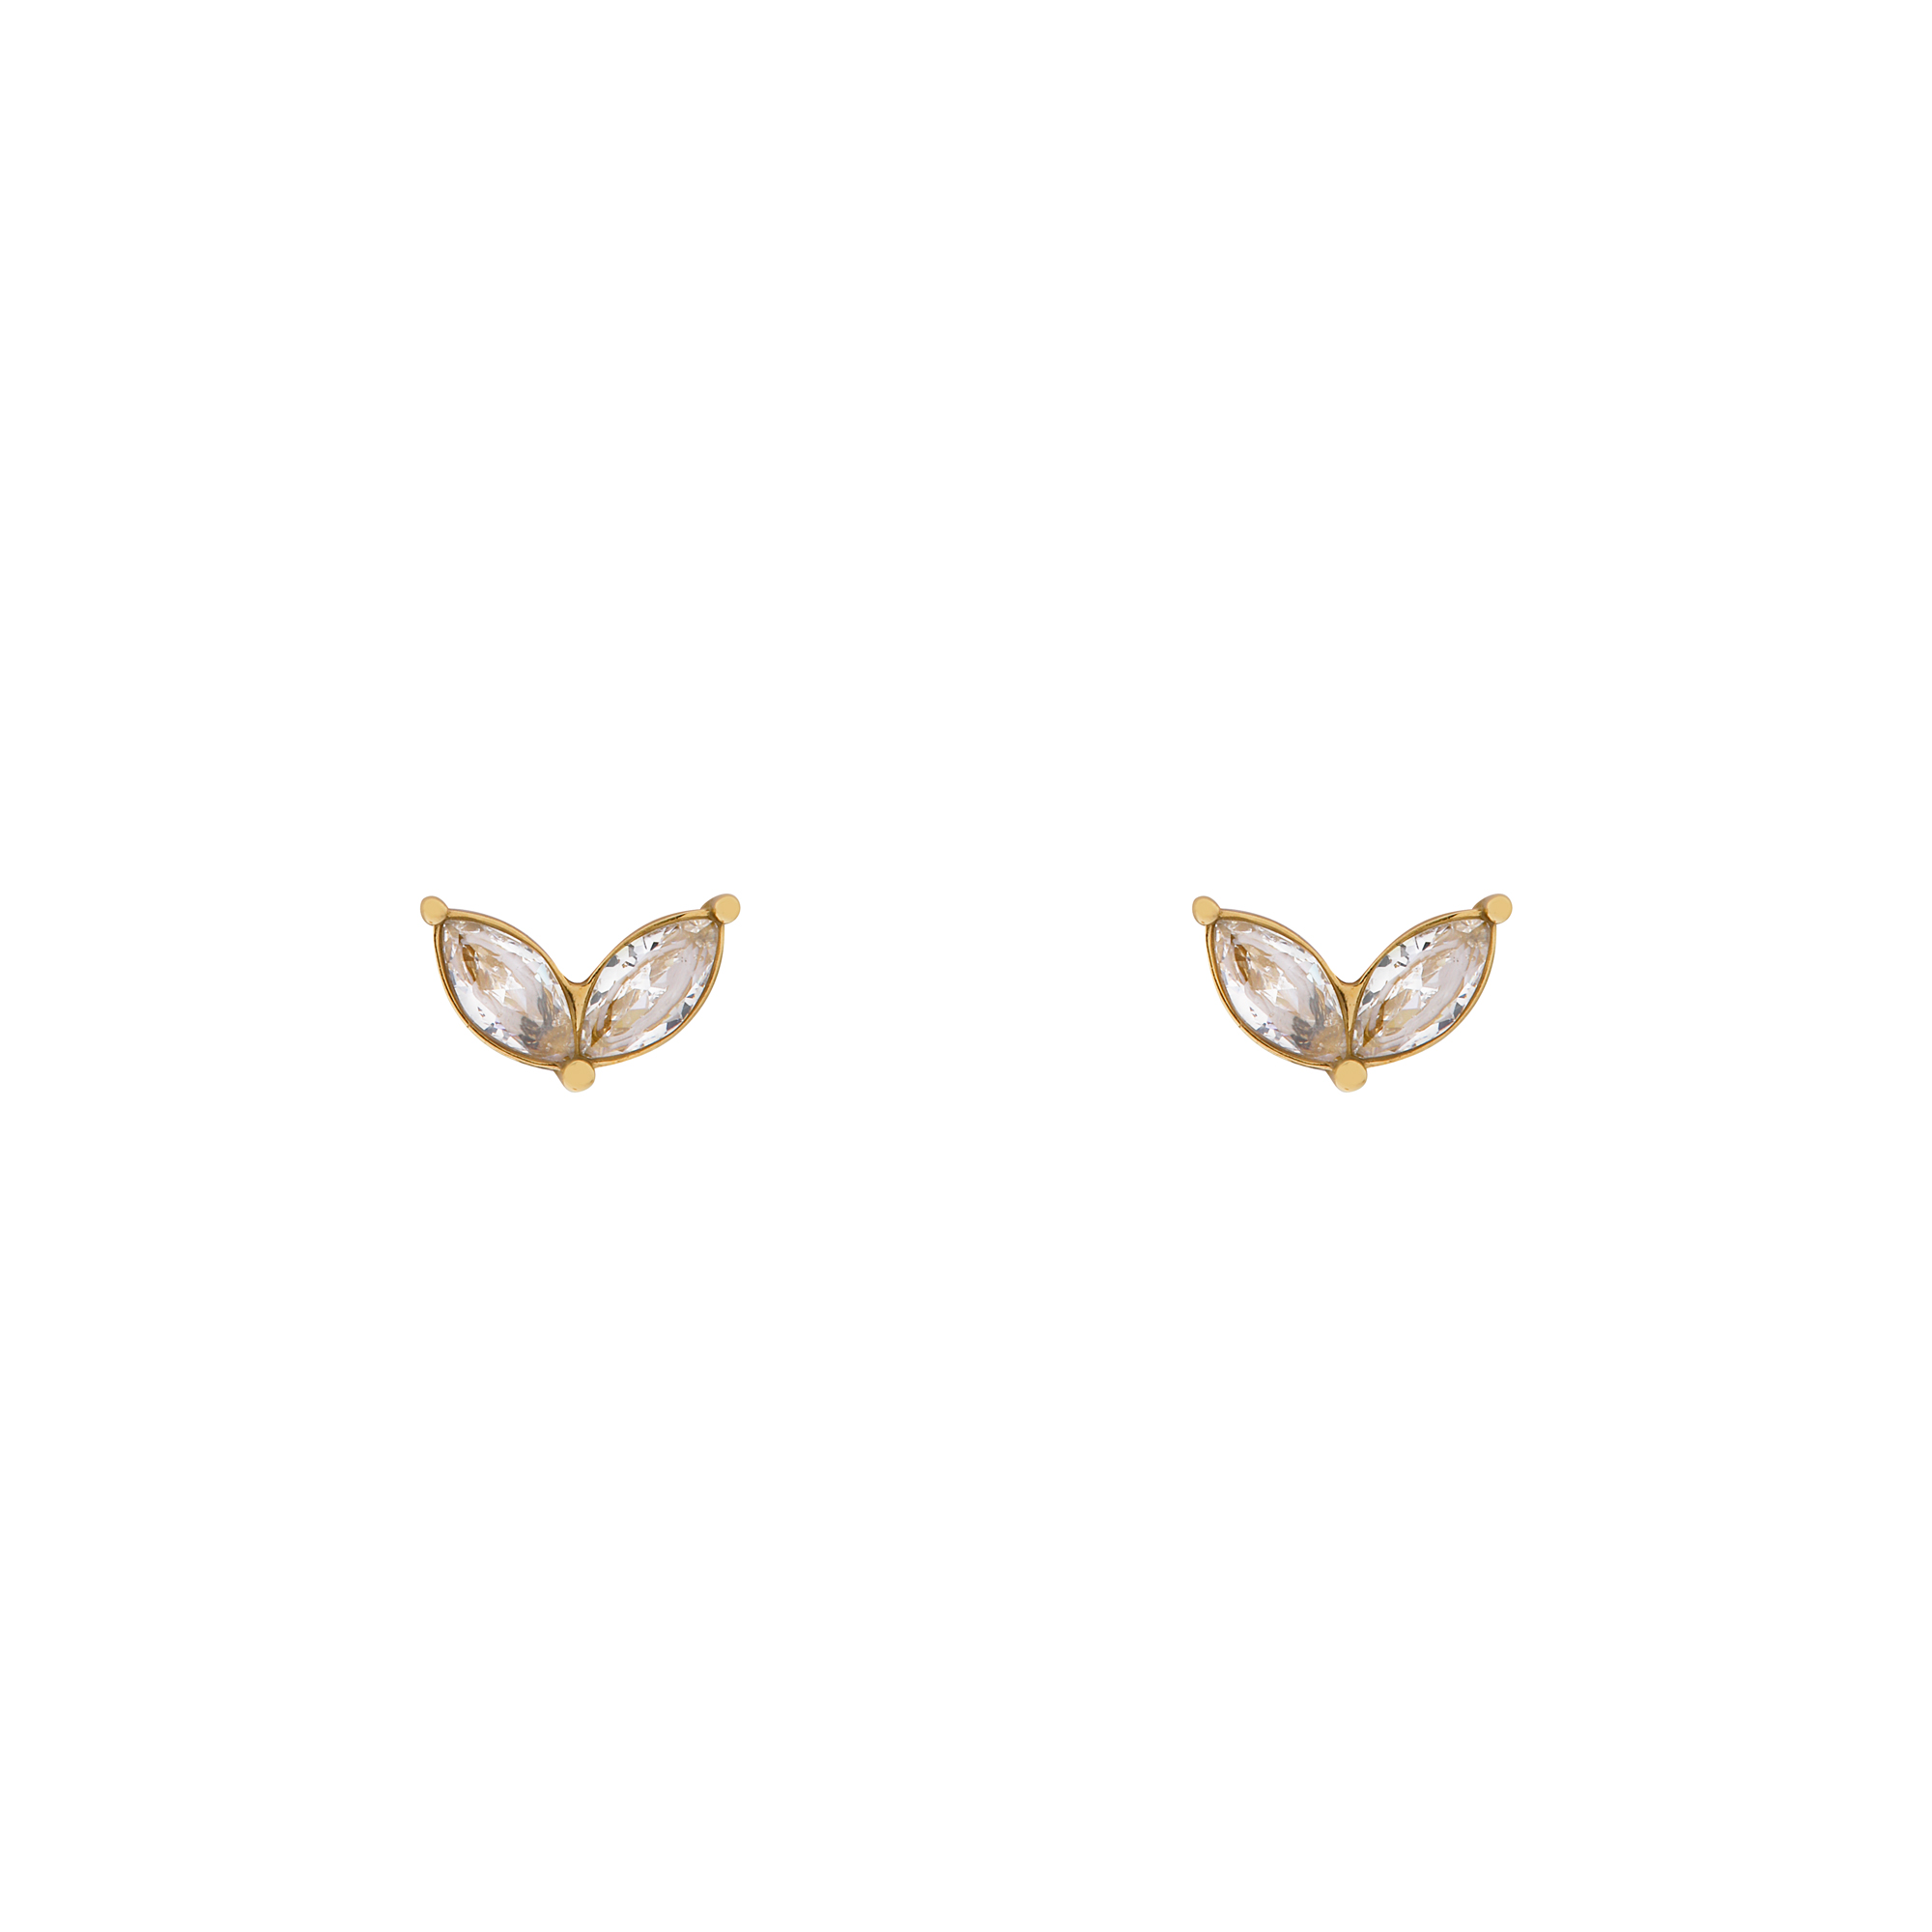 Stud earrings stones wings gold